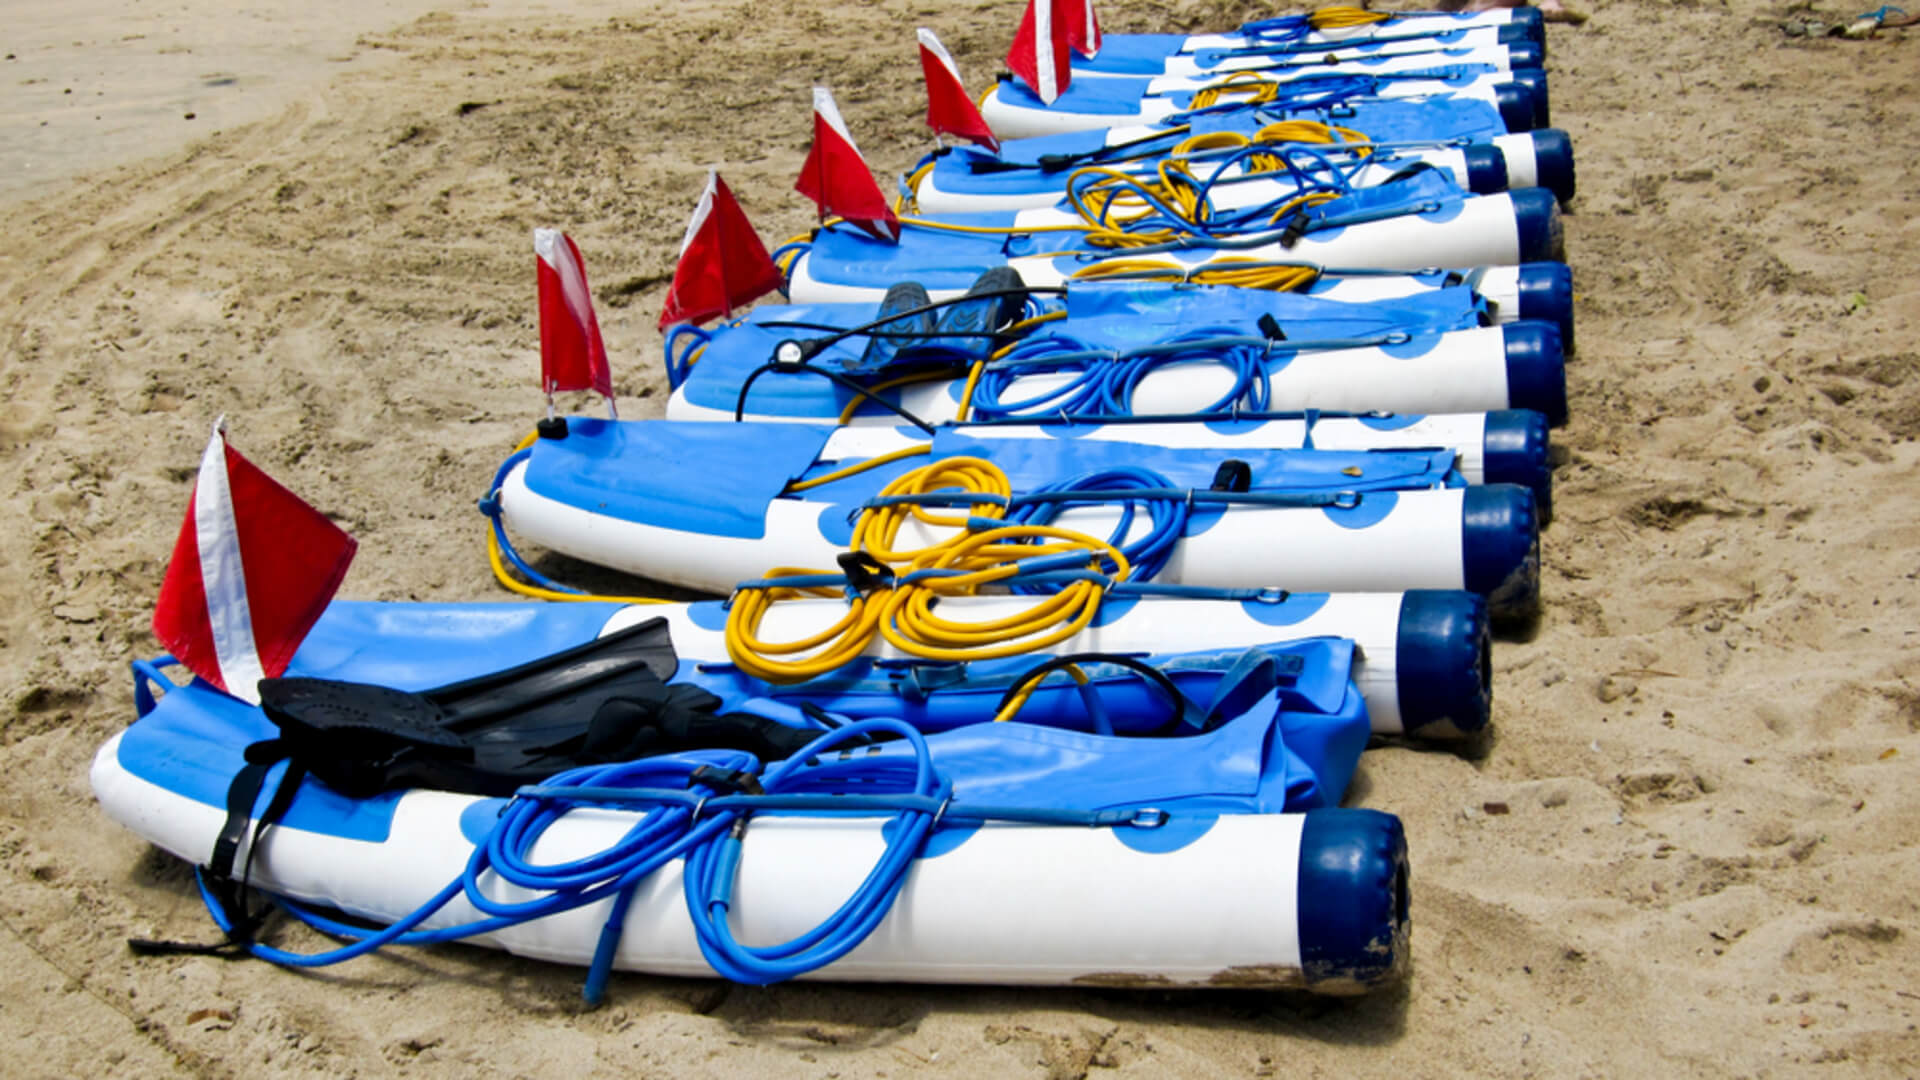 SNUBA gear set up on a beach in Kauai